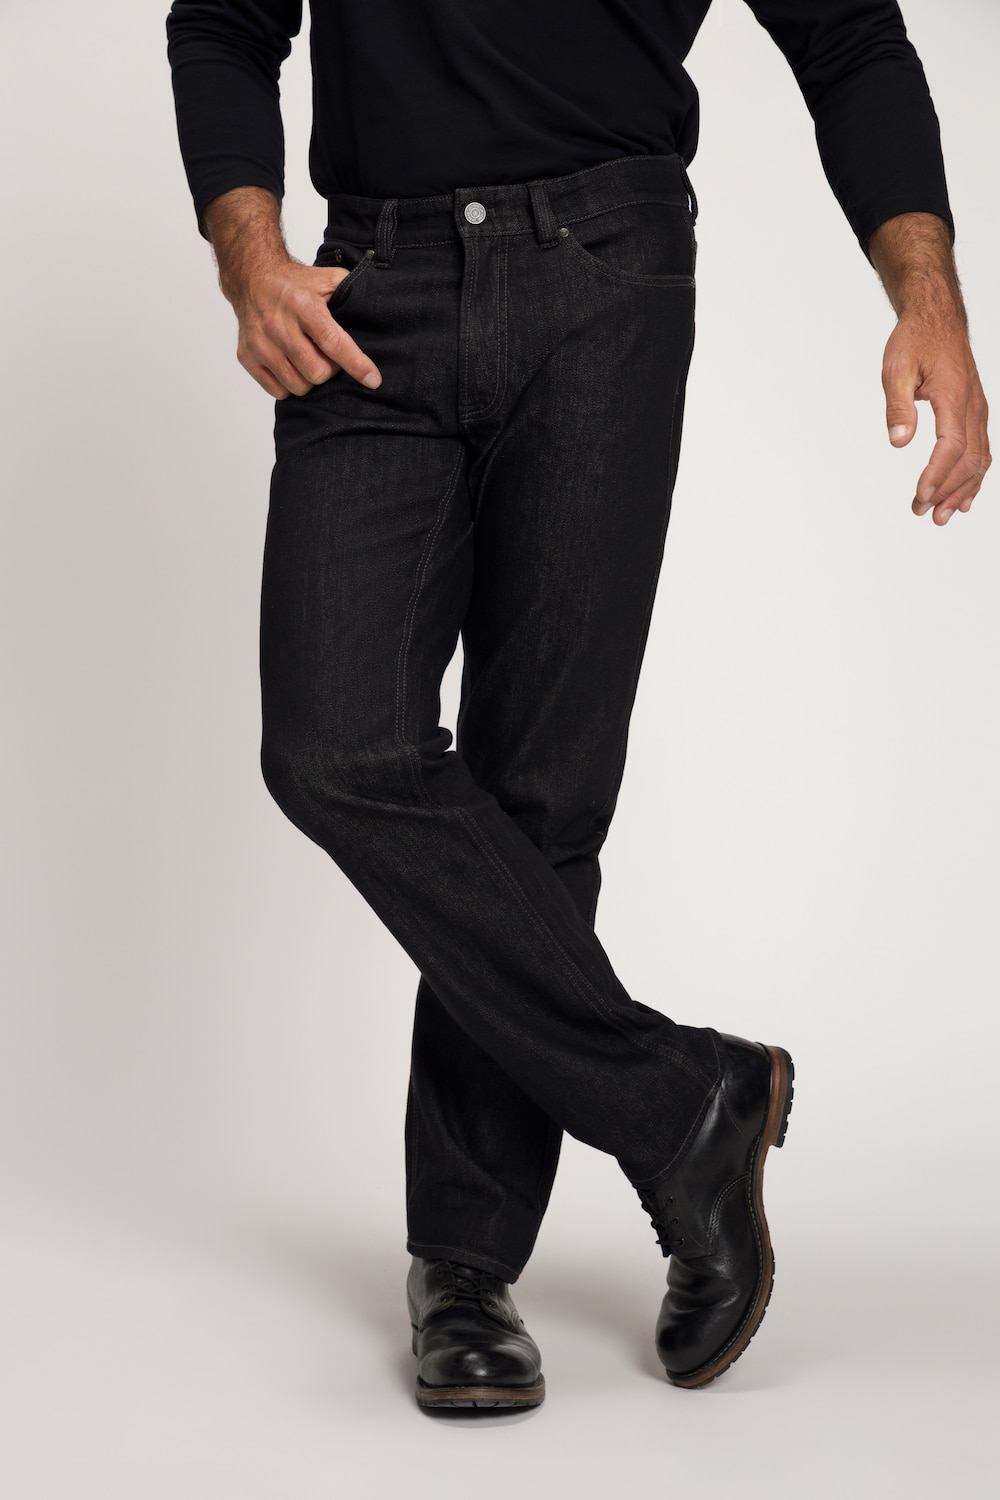 grandes tailles jean 5 poches, hommes, noir, taille: 60, coton, jp1880